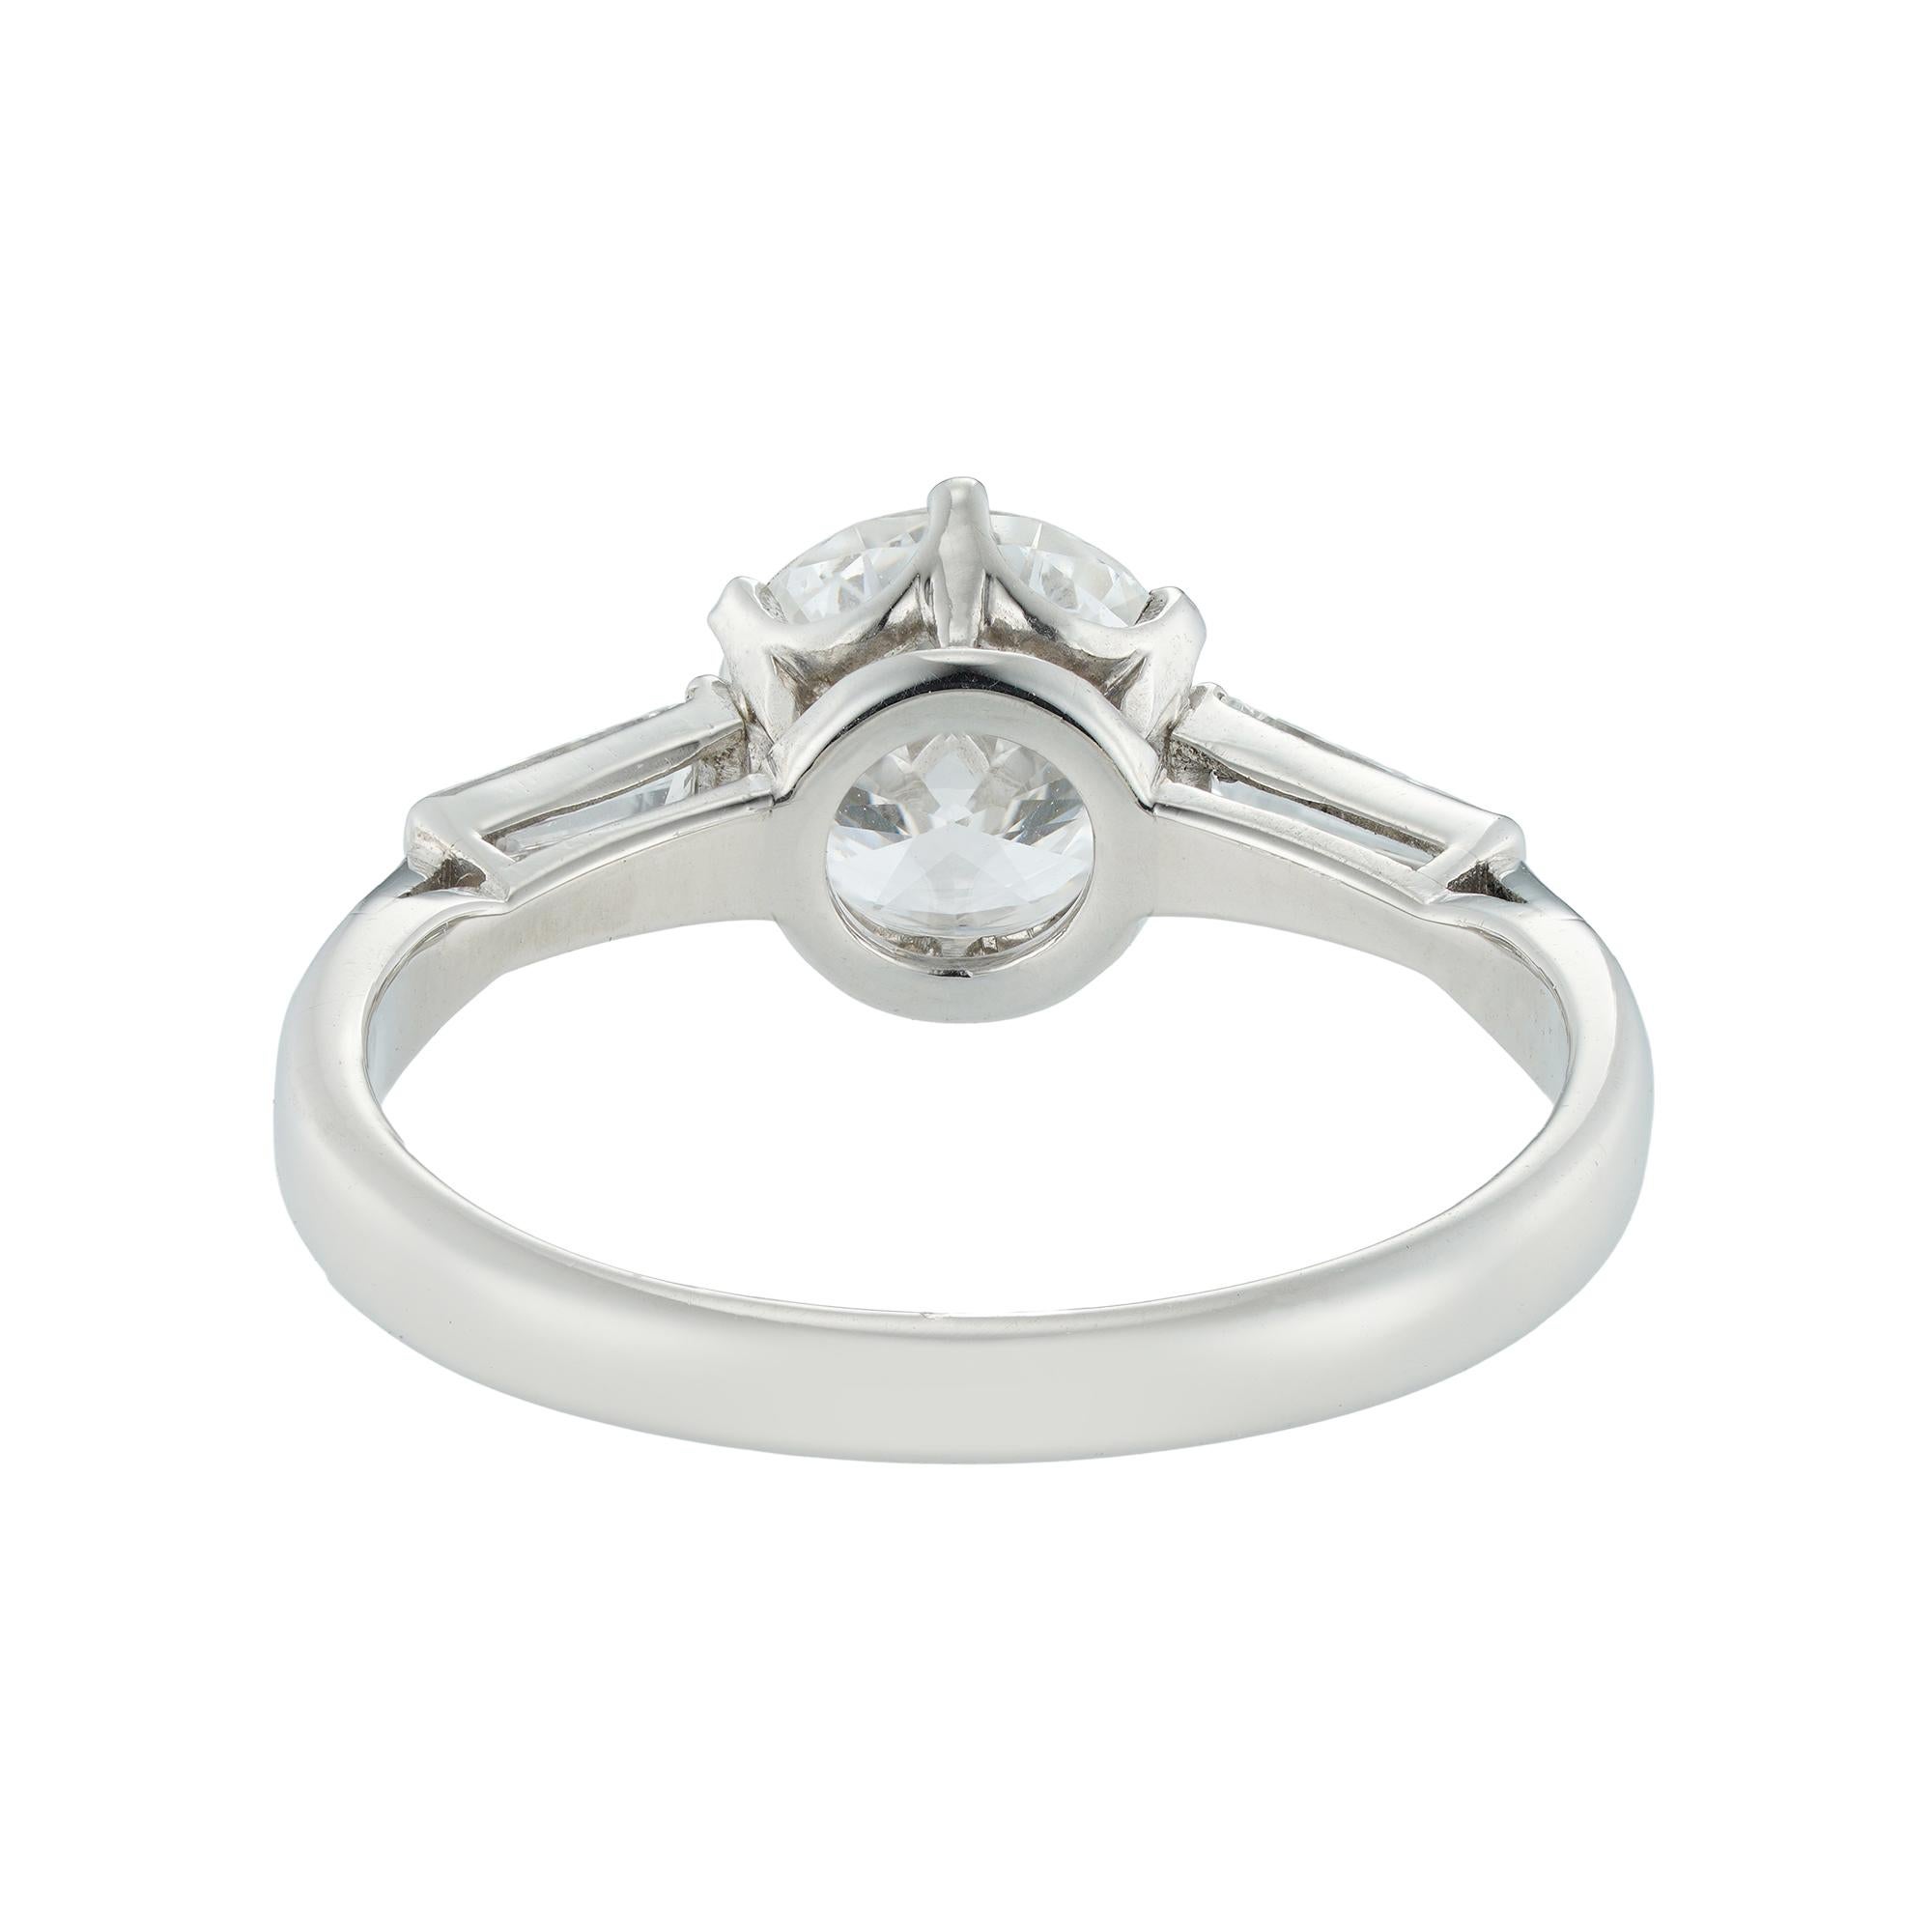 1.39 carat diamond ring price